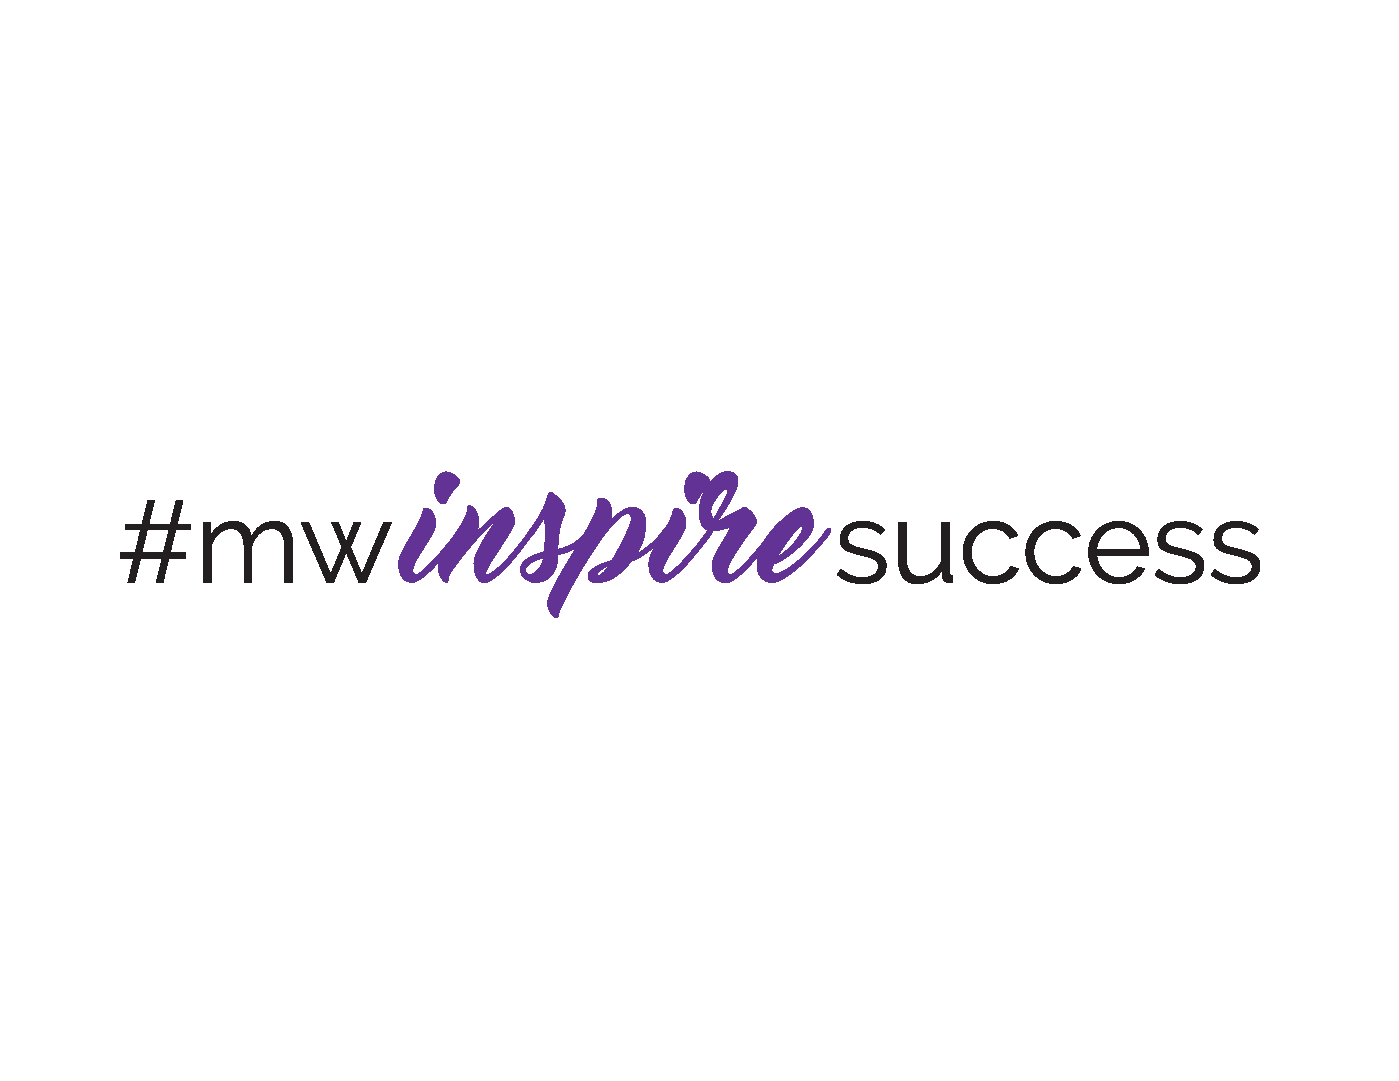 inspire success hashtag